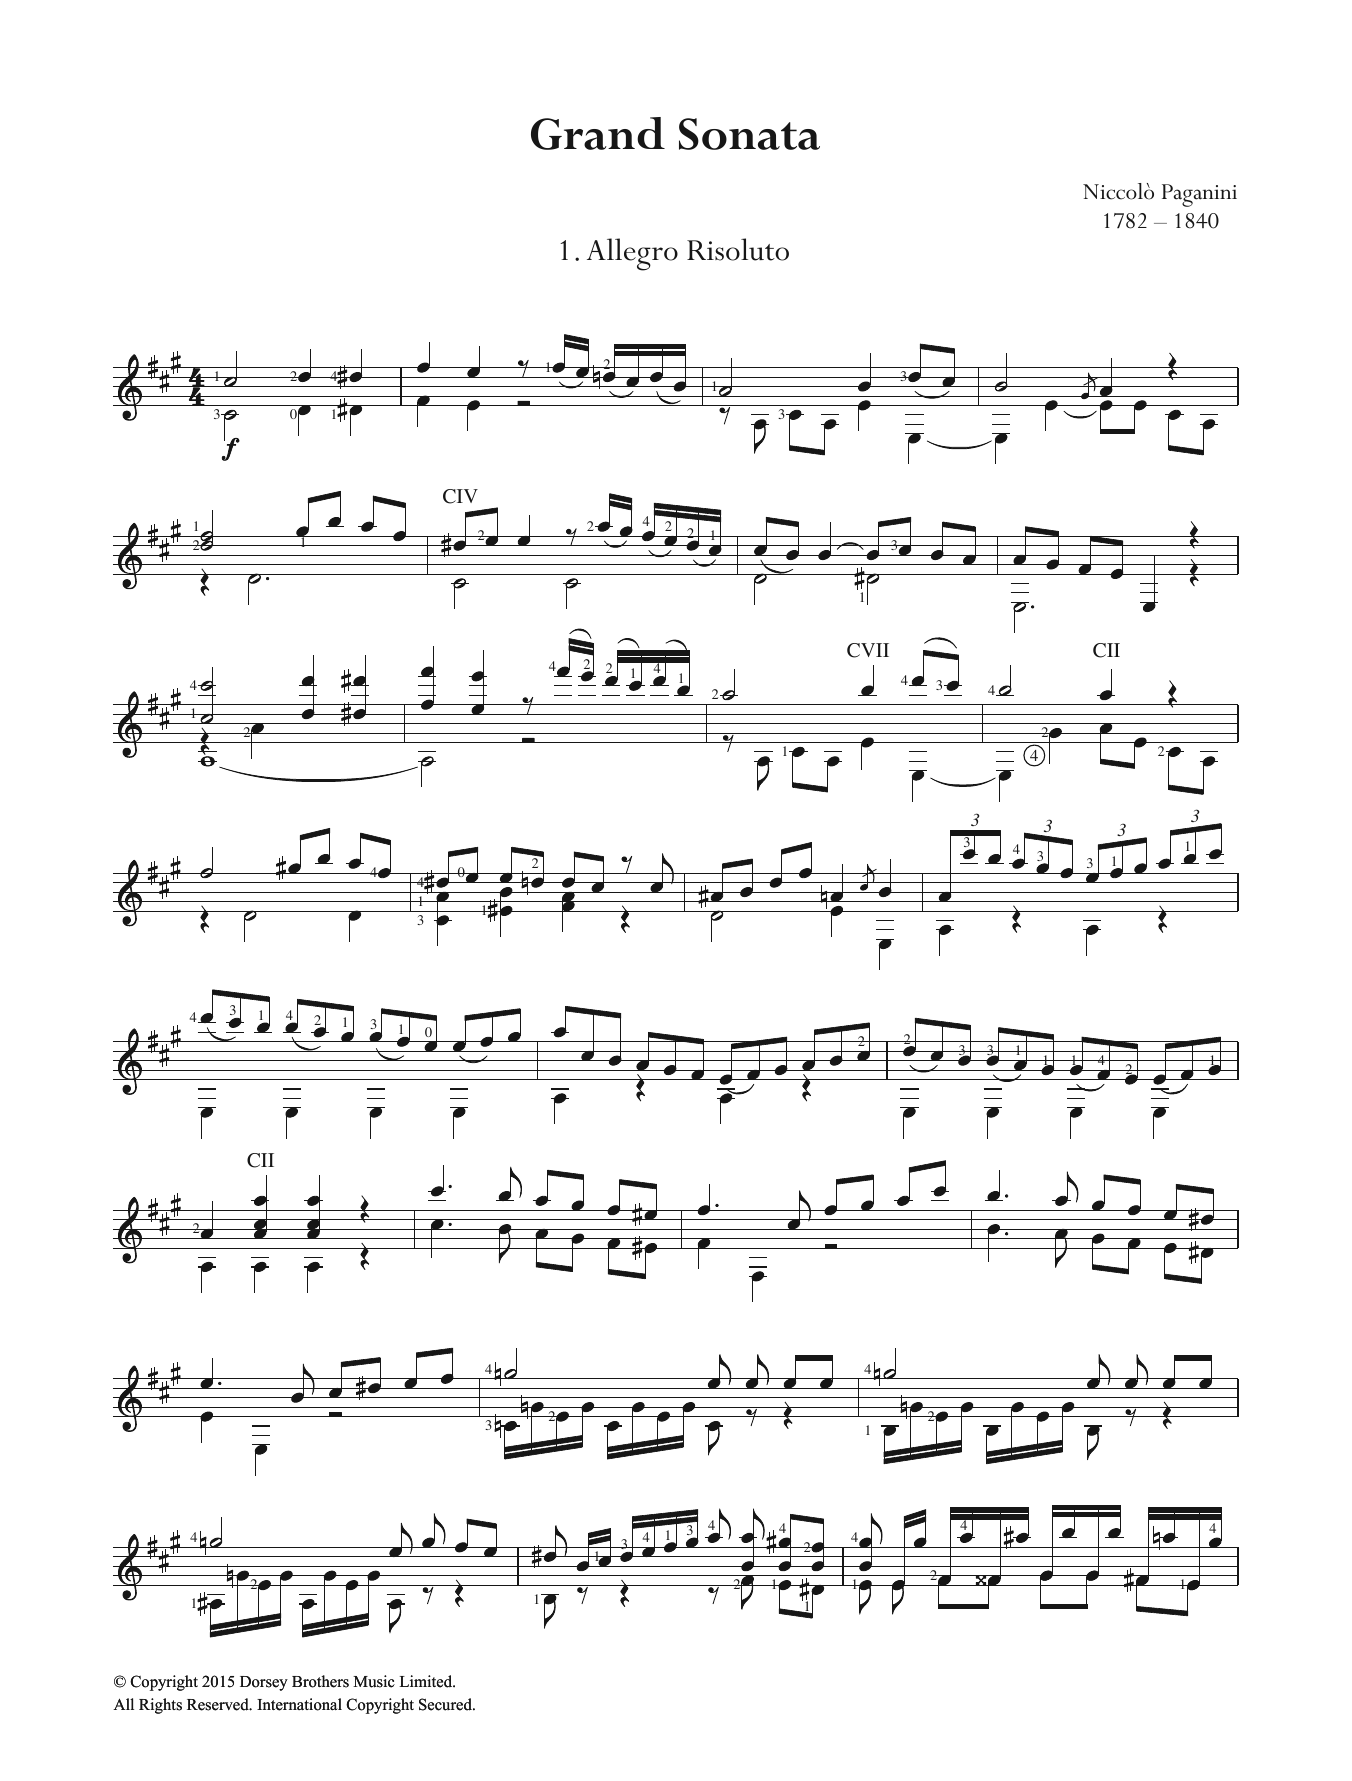 Niccolo Paganini Grand Sonata Sheet Music Notes & Chords for Guitar - Download or Print PDF